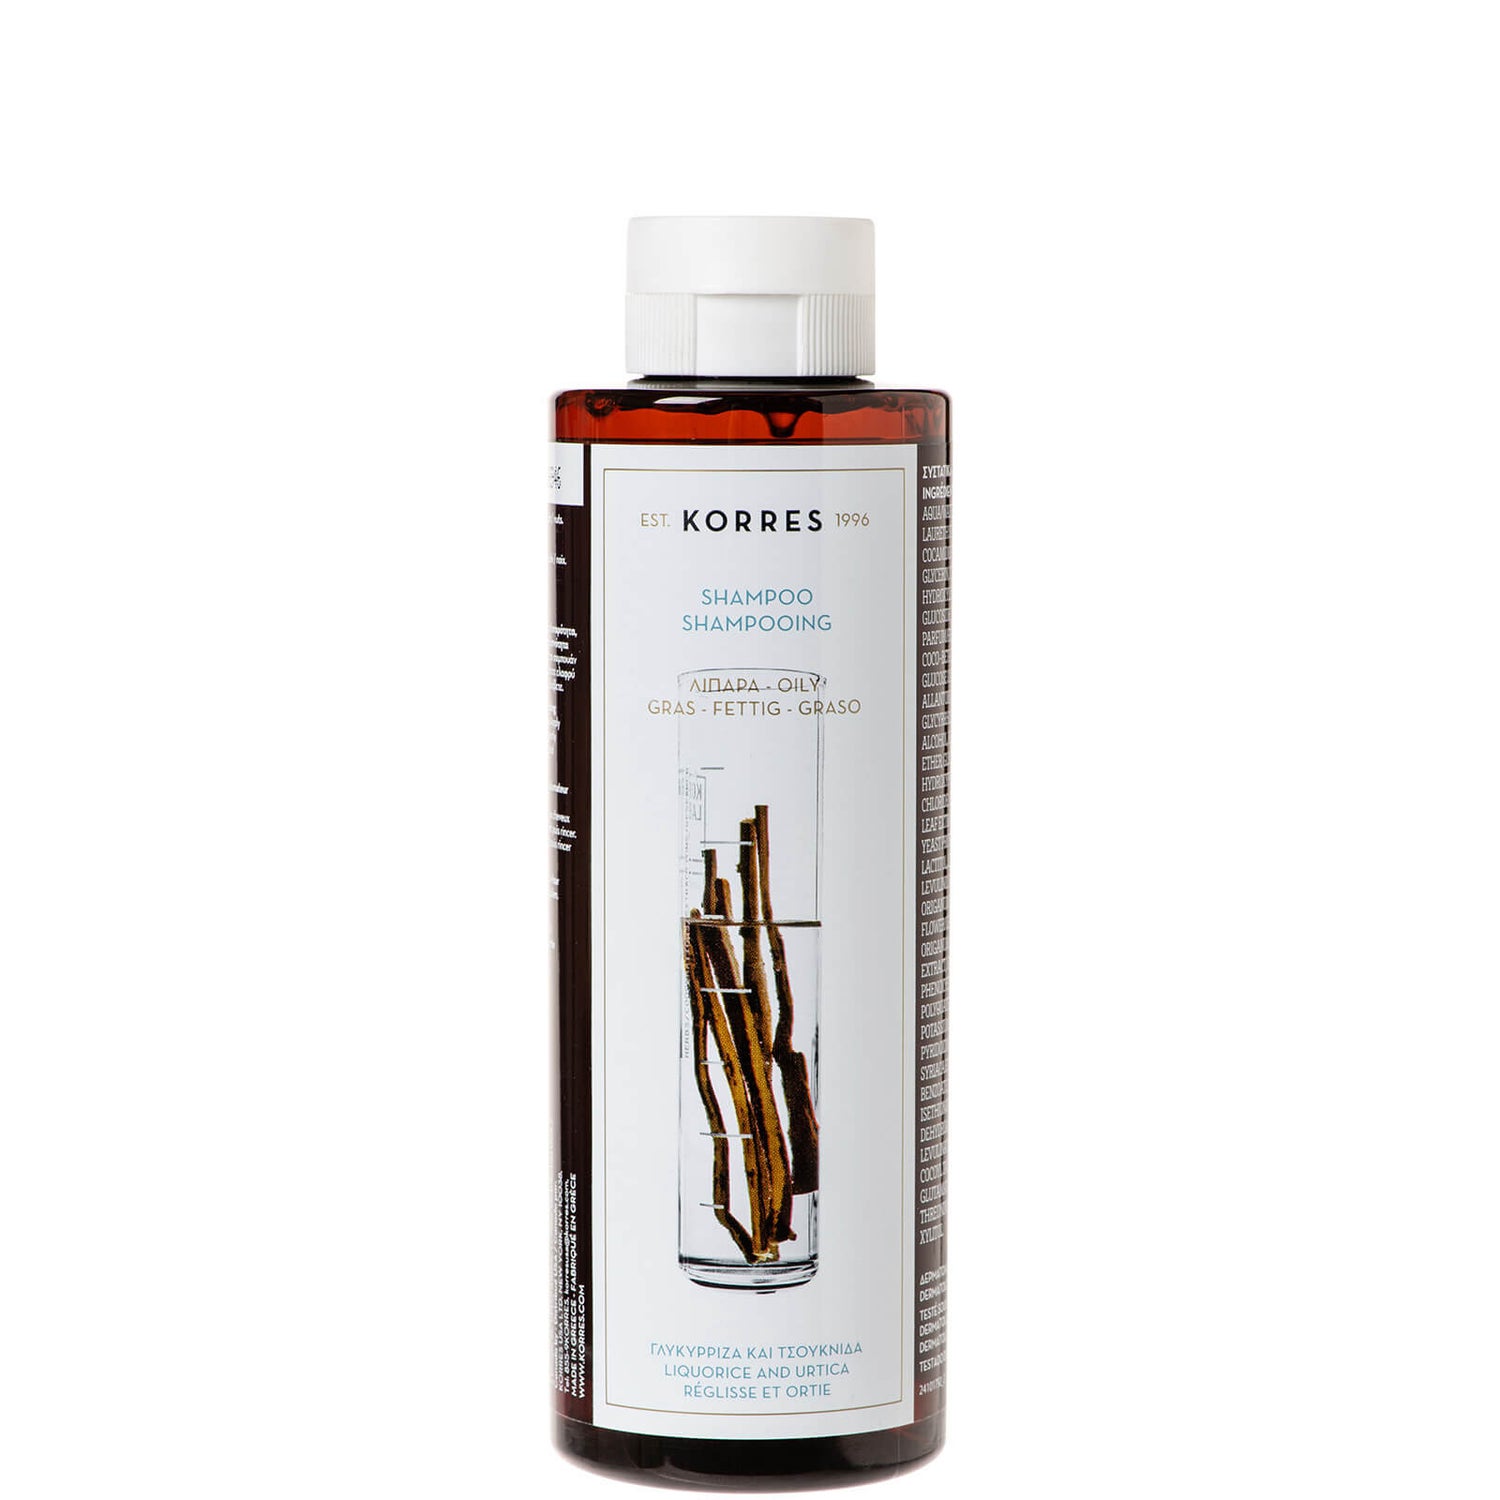 KORRES Shampoo Süßholzwurzel und Urtica für fettiges Haar (250ml)